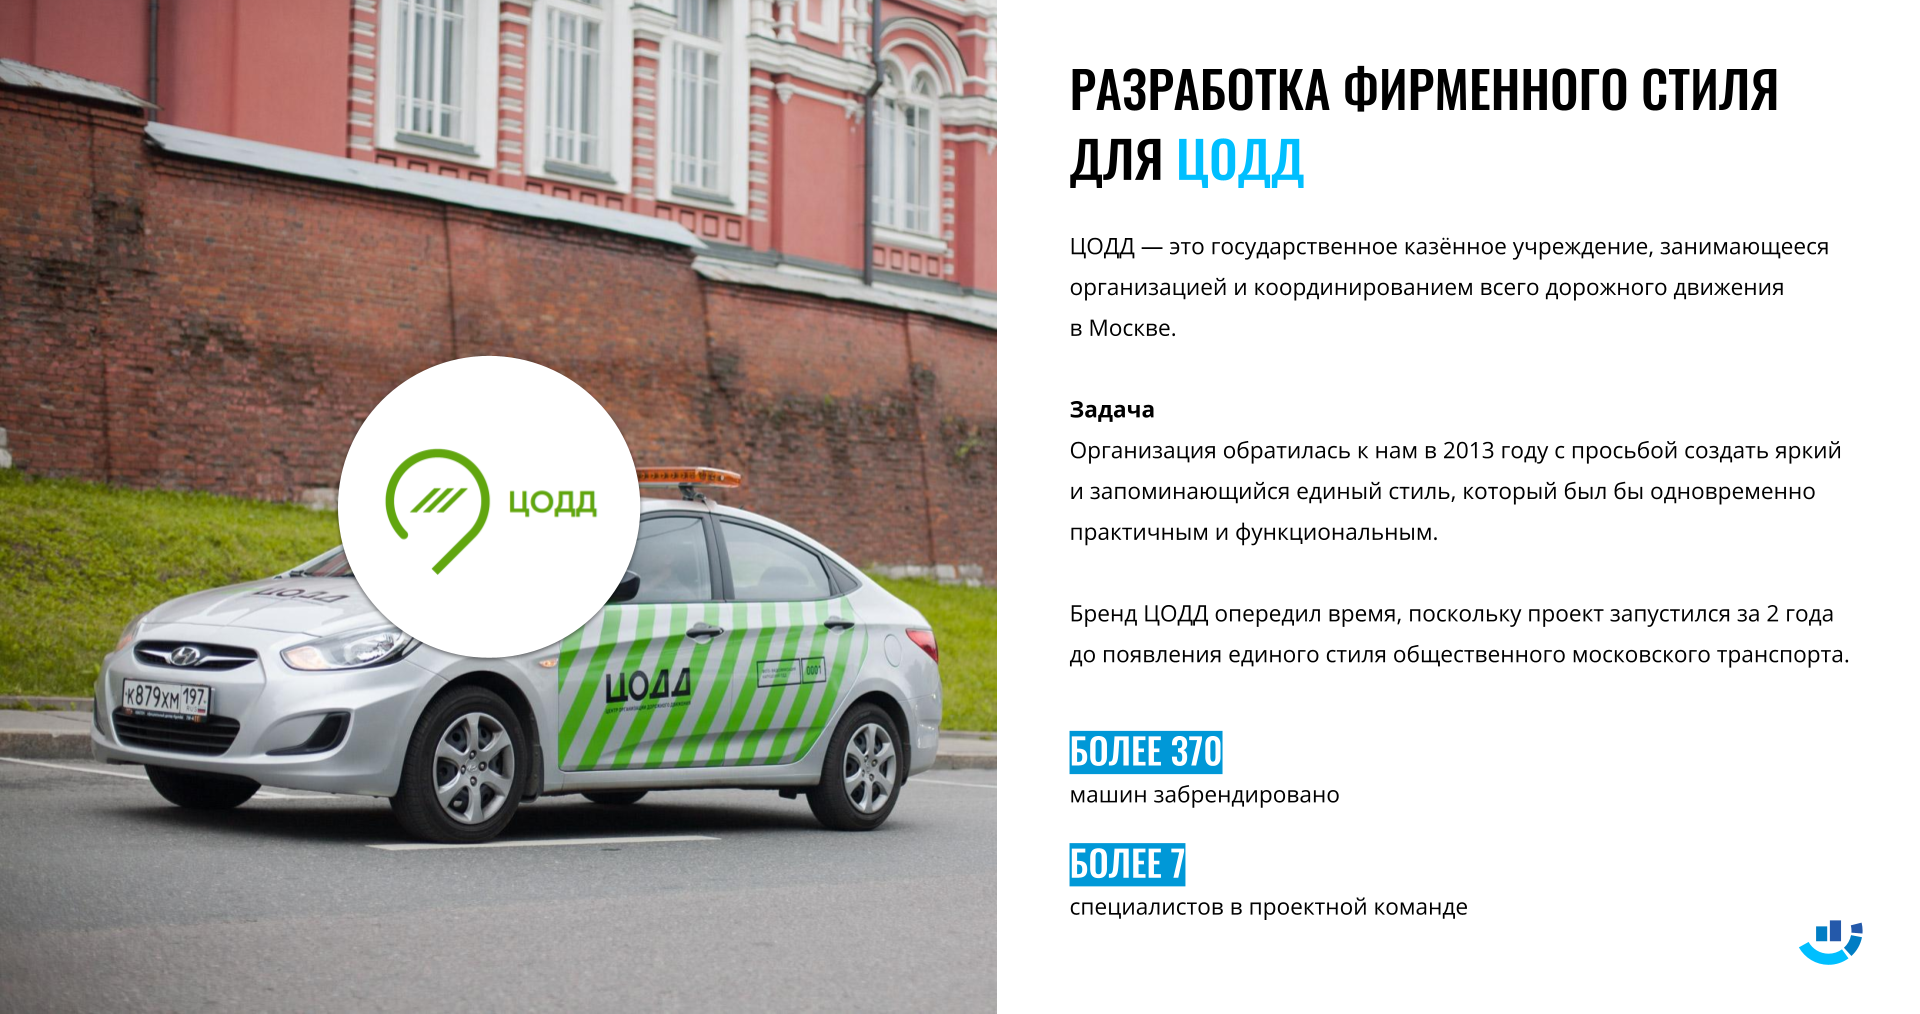 [Кейс] ЦОДД, парковки Москвы. Разработали фирменный стиль для ЦОДД и наш дизайн опередил время | брендинг, кейс, парковки москвы, фирменный стиль, цодд